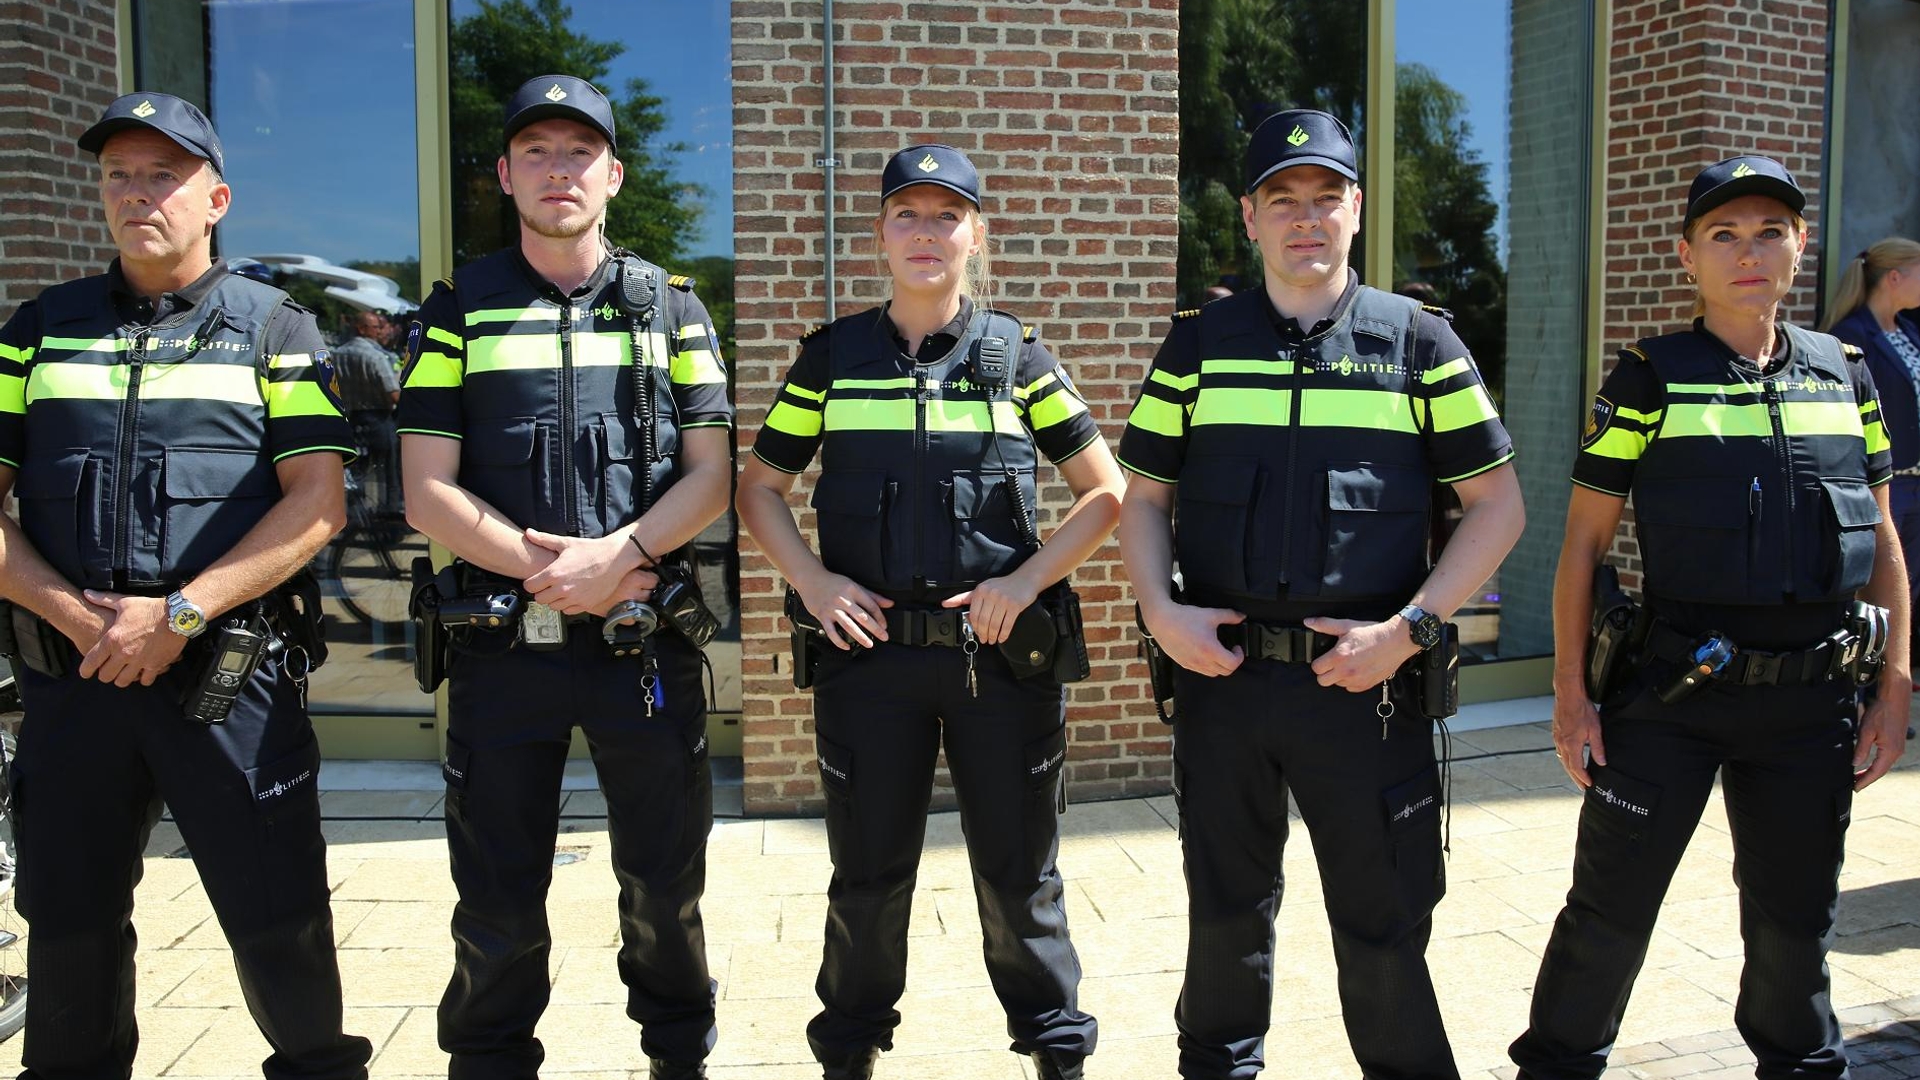 Politie_Nederland_nieuw_uniform